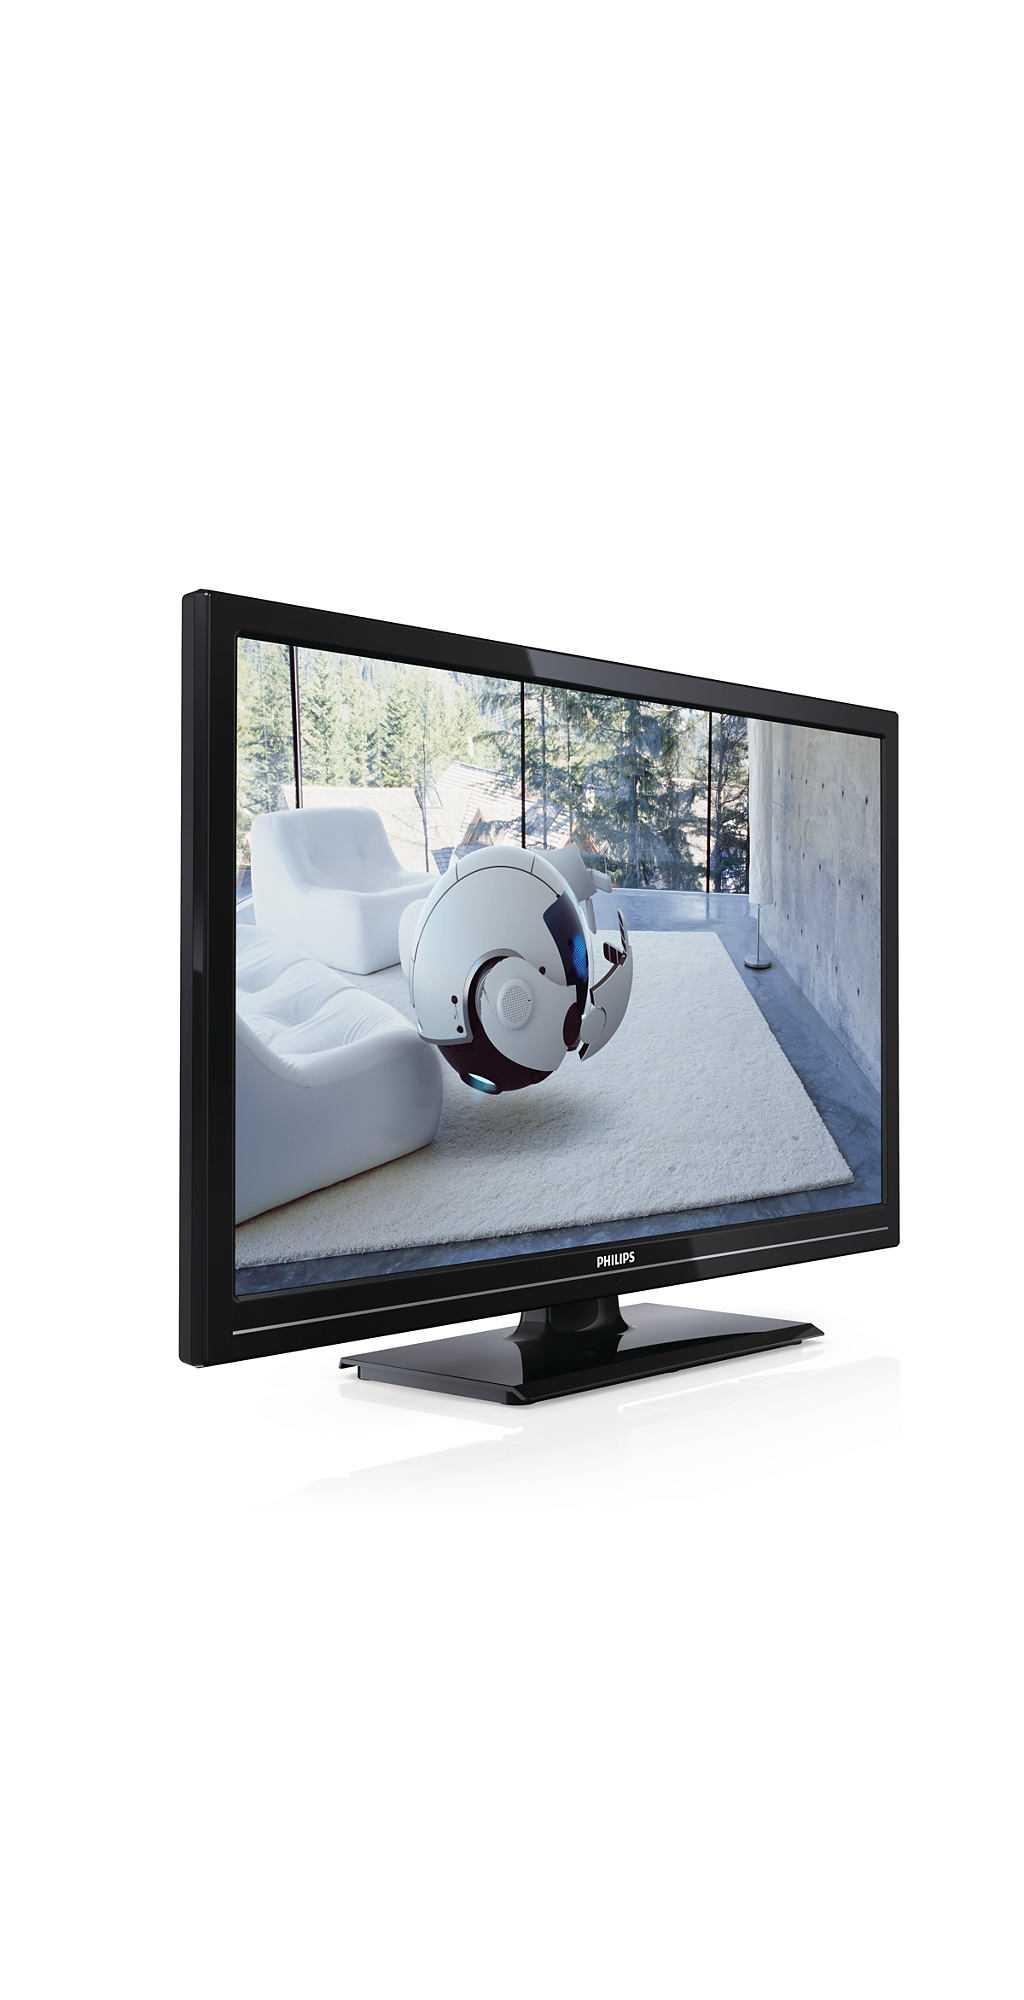 Philips 24pfl2908h (черный) - купить , скидки, цена, отзывы, обзор, характеристики - телевизоры